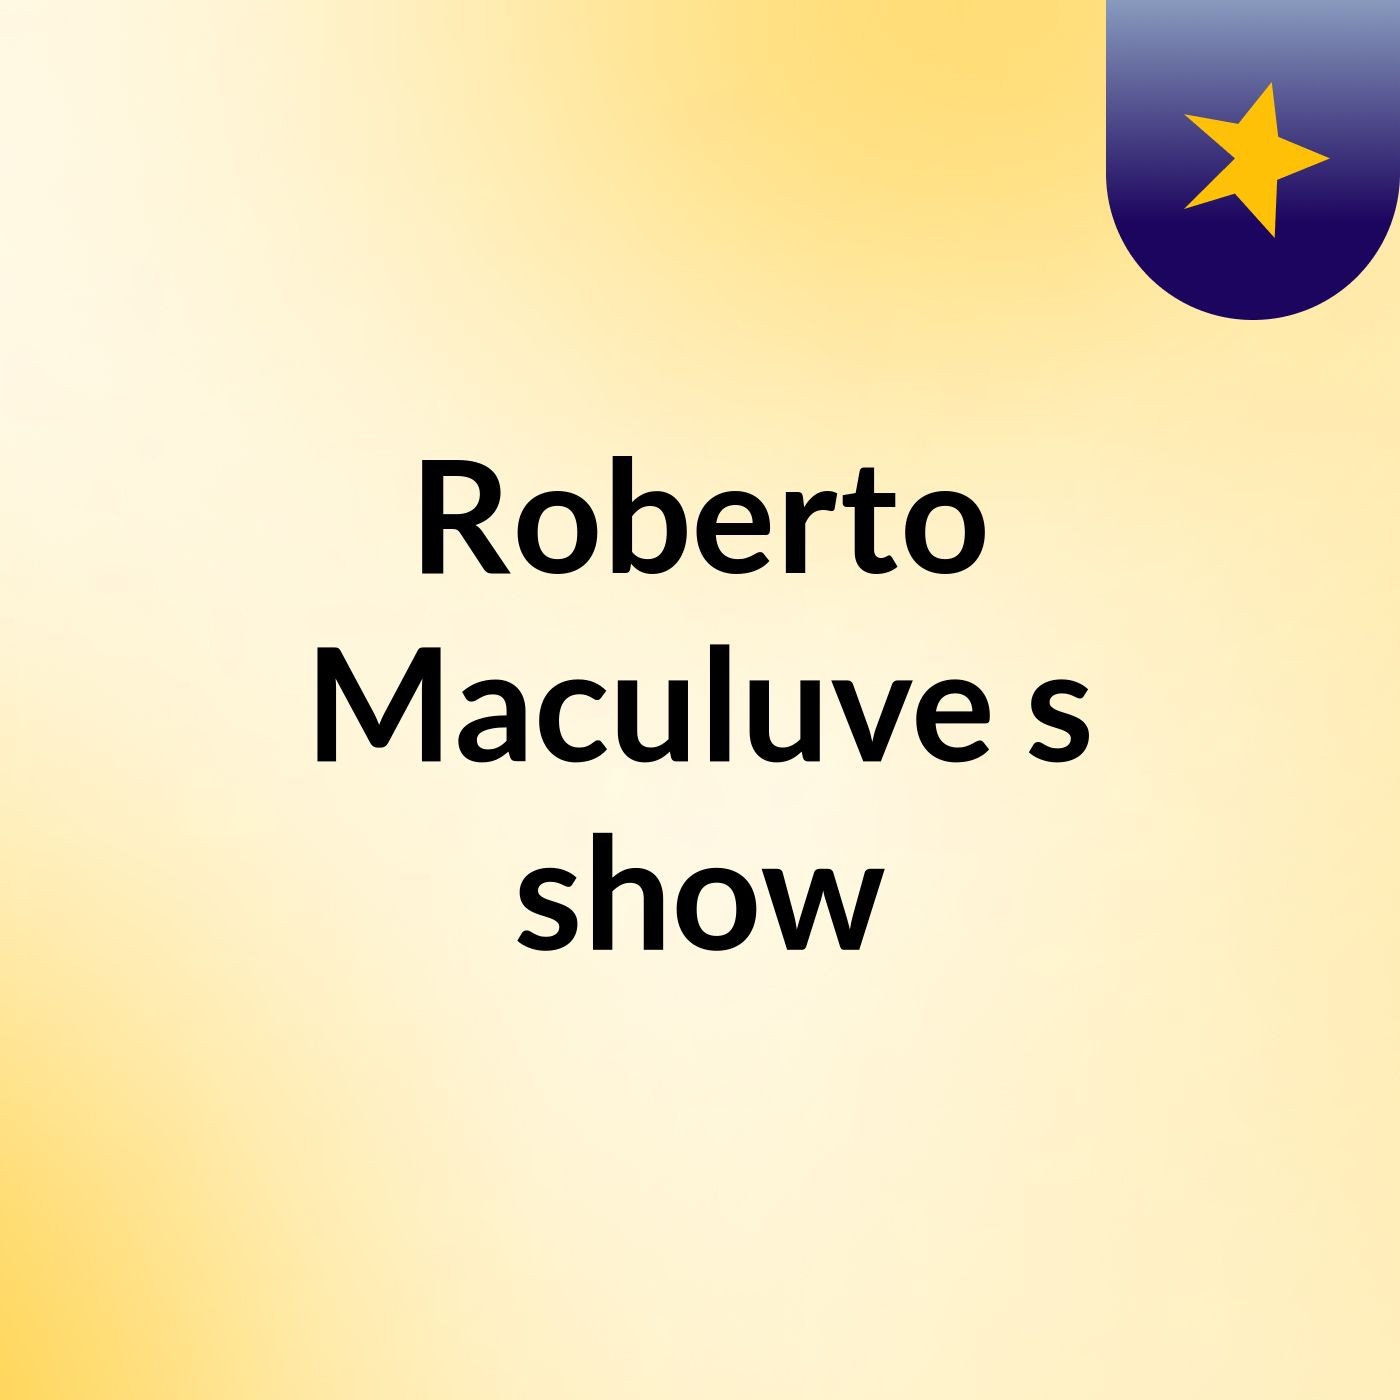 Roberto Maculuve's show